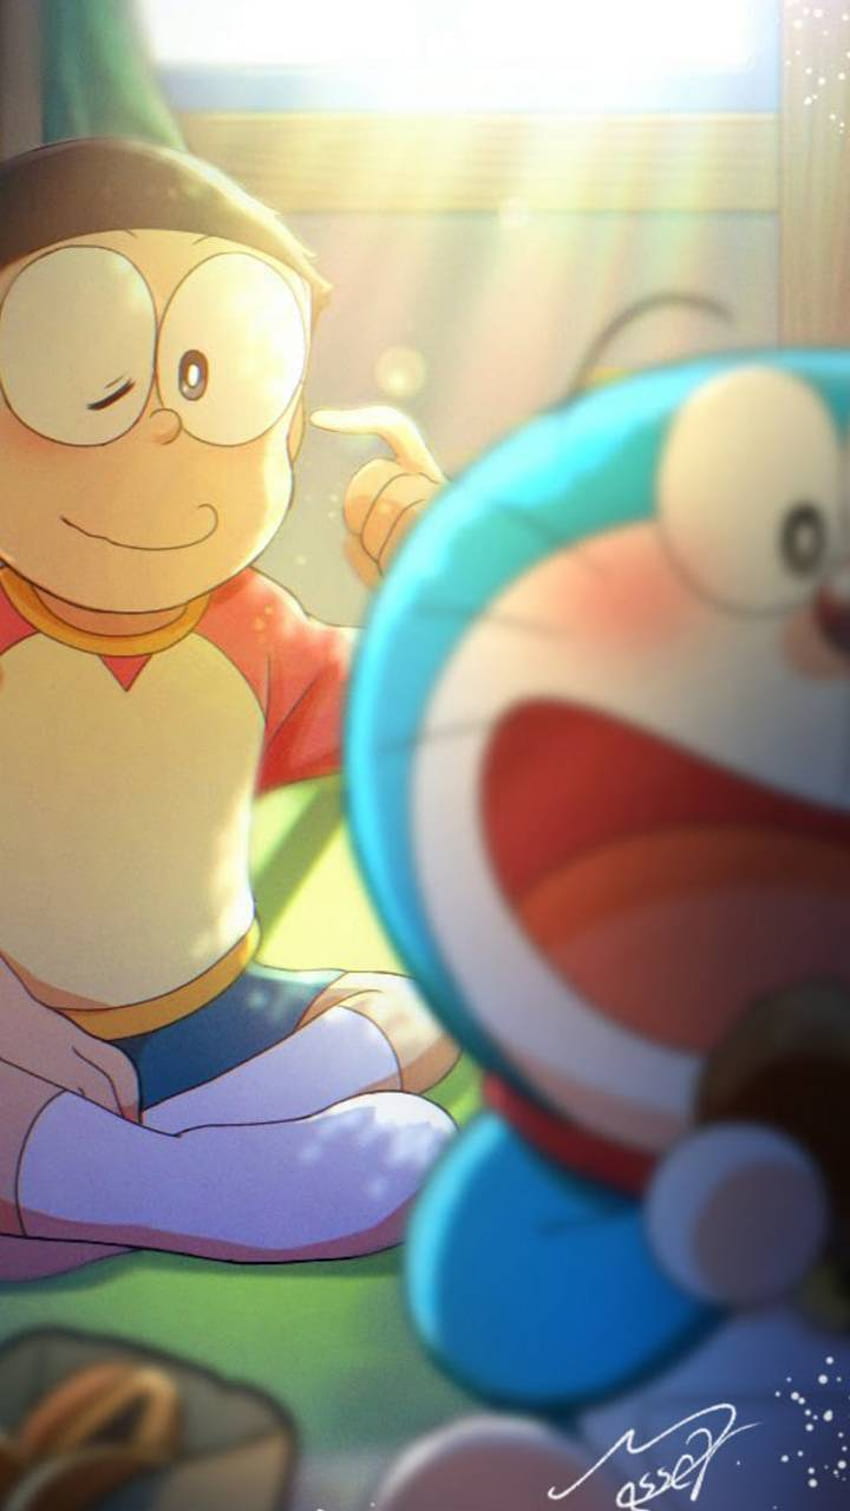 Hình ảnh của những nhân vật Doraemon, Dorami và Nobita năm nay được chụp với chất lượng tuyệt vời, giúp bạn có những bức ảnh đẹp và tự tay thiết kế album ảnh cho riêng mình. Những hình ảnh này càng làm tăng vẻ đáng yêu, độc đáo và gần gũi của những nhân vật vô cùng quen thuộc này.